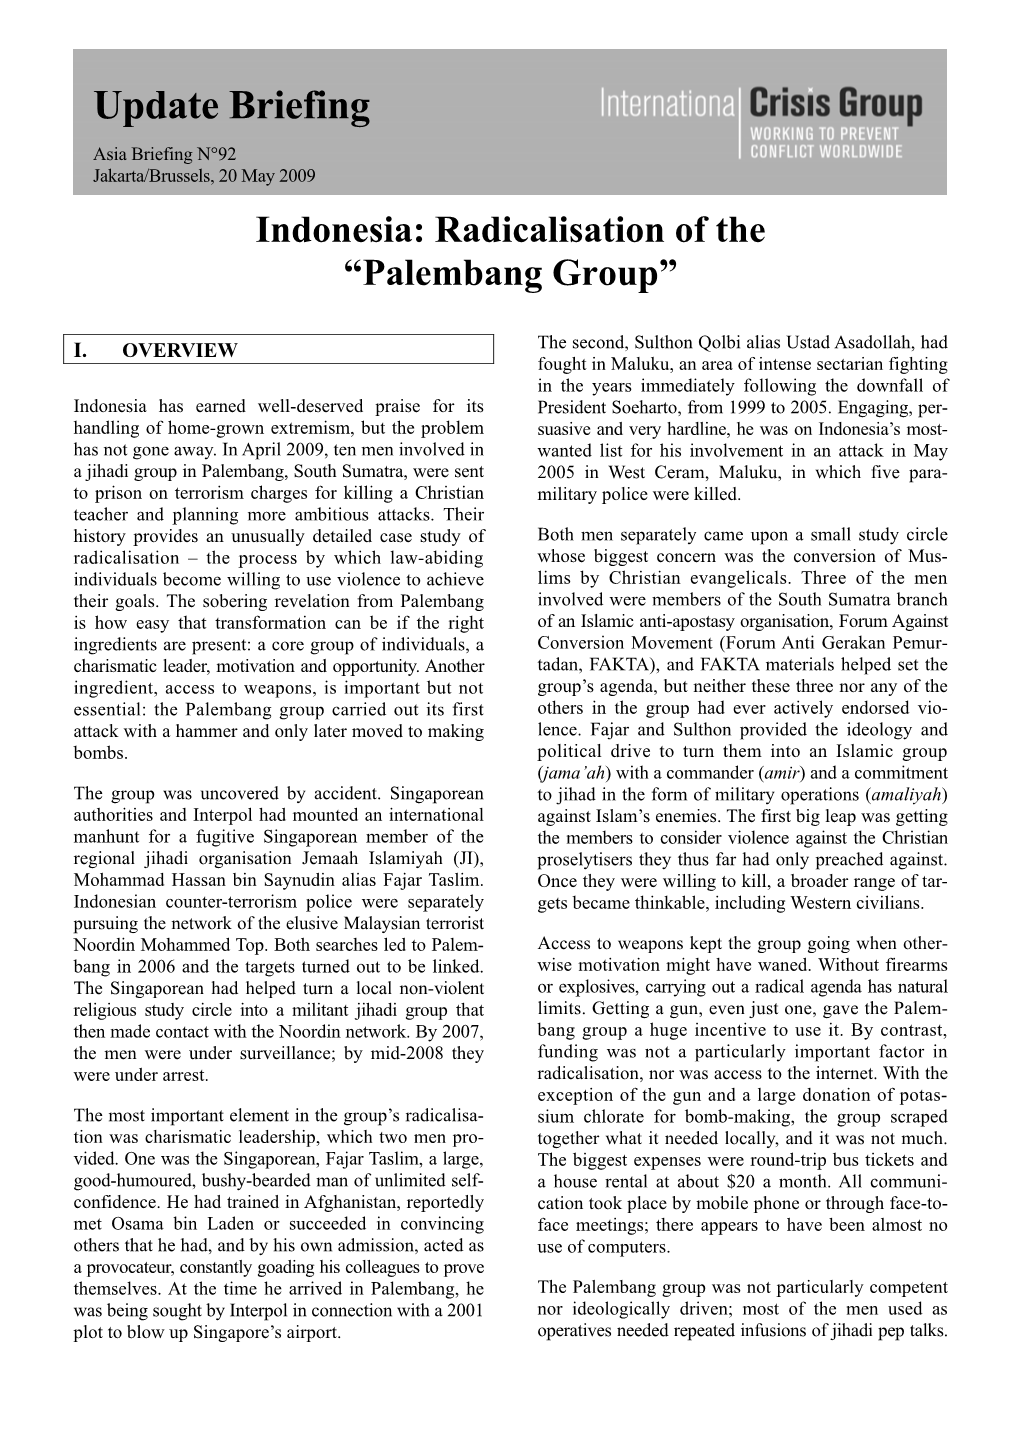 Indonesia: Radicalisation of the “Palembang Group”